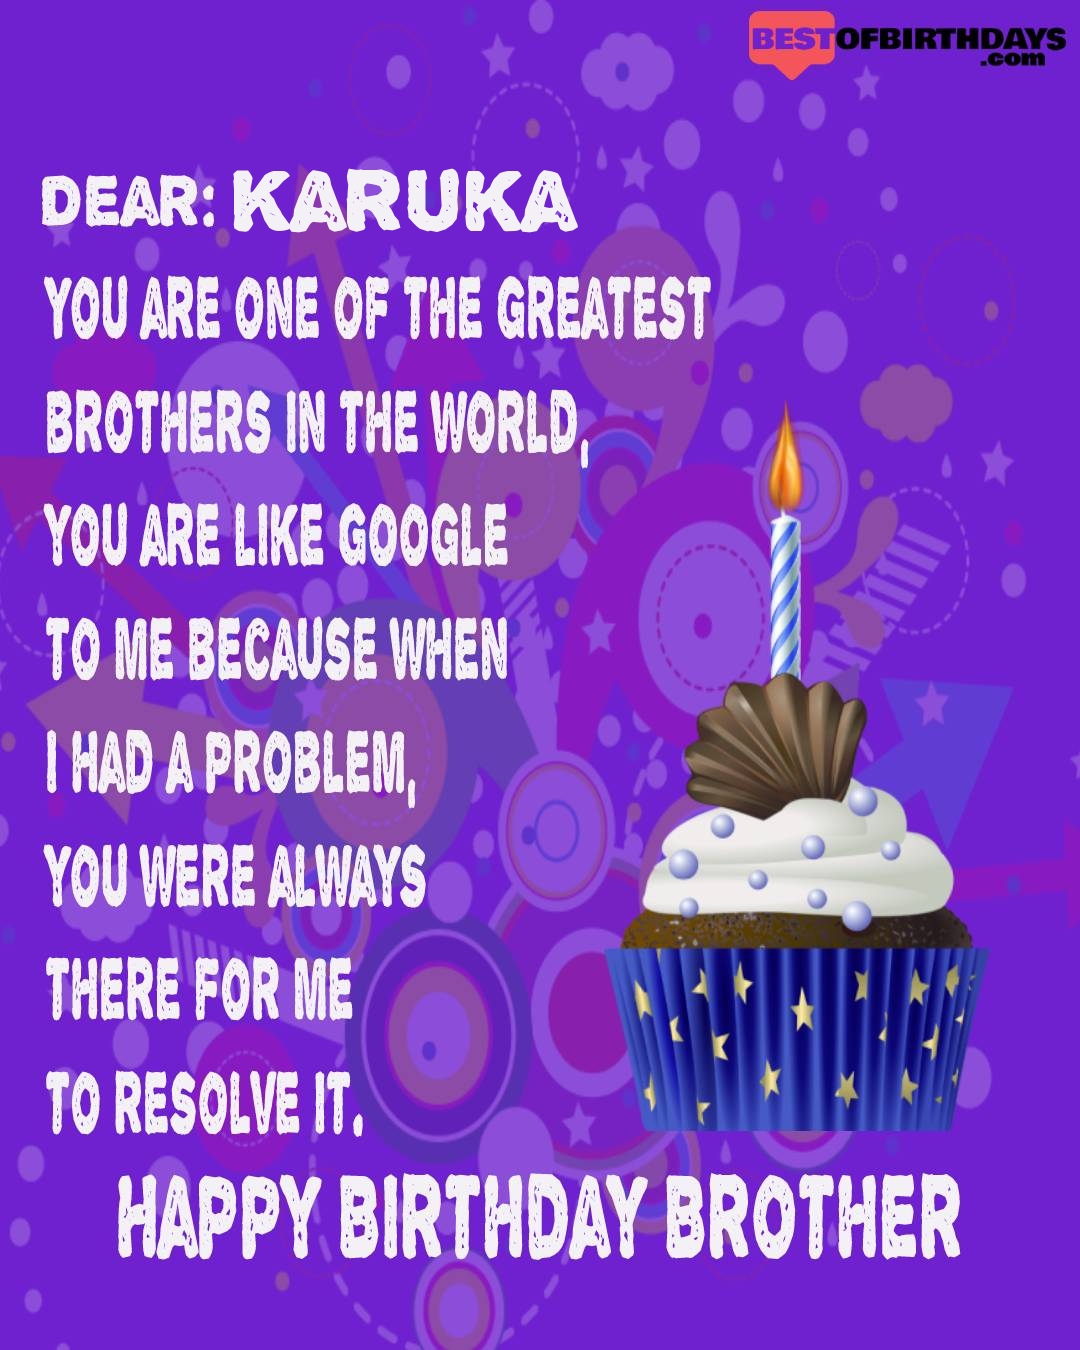 Happy birthday karuka bhai brother bro